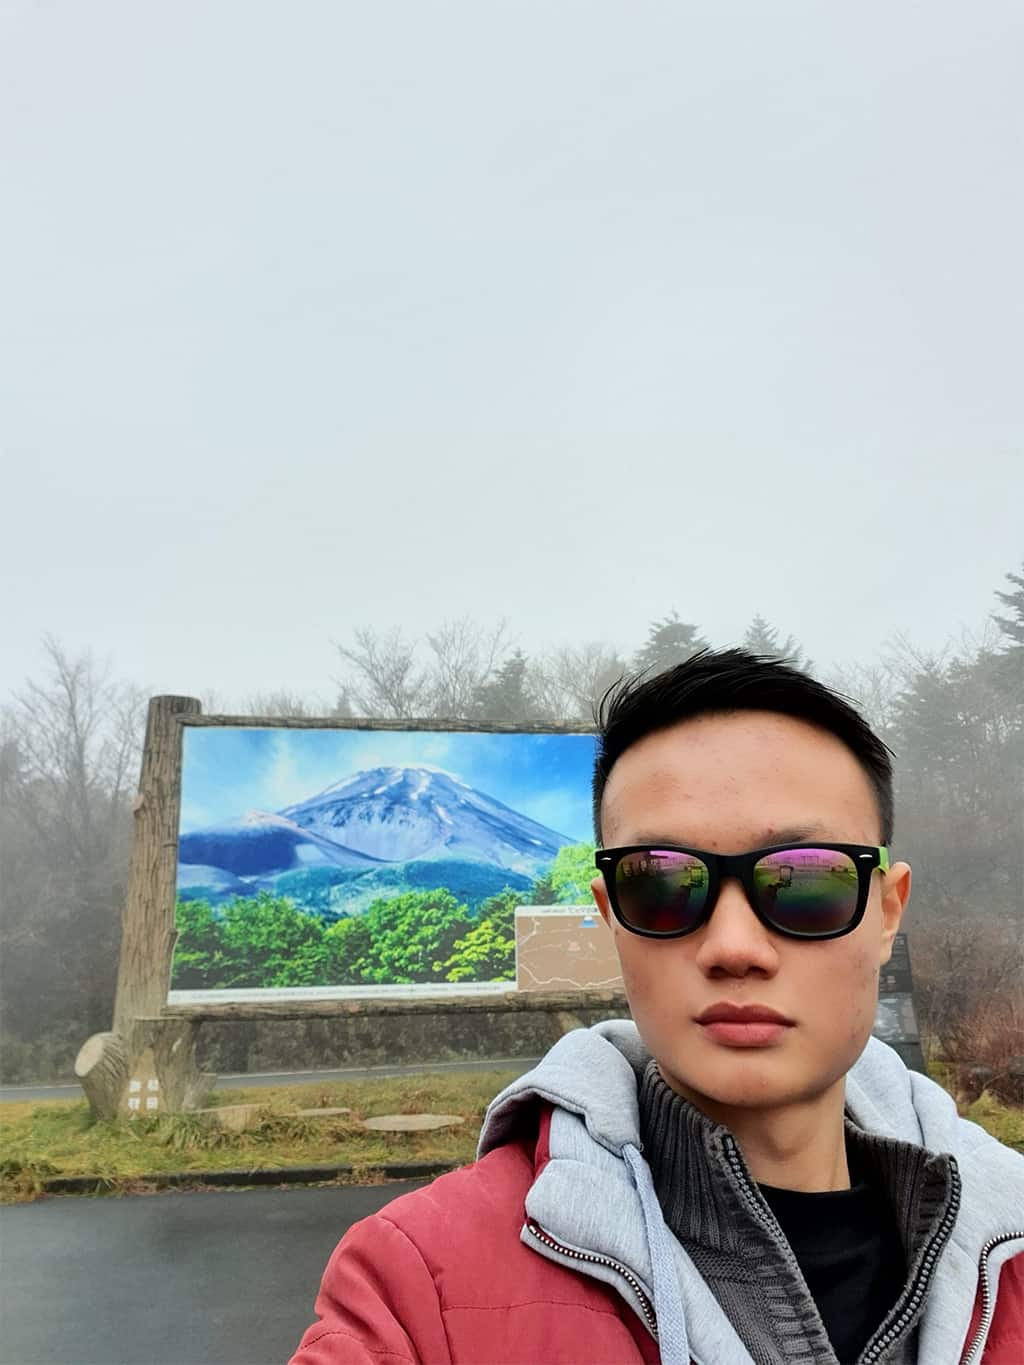 28- زرتُ جبل فوجي للمرة الأولى. كان المشهد خلاباً